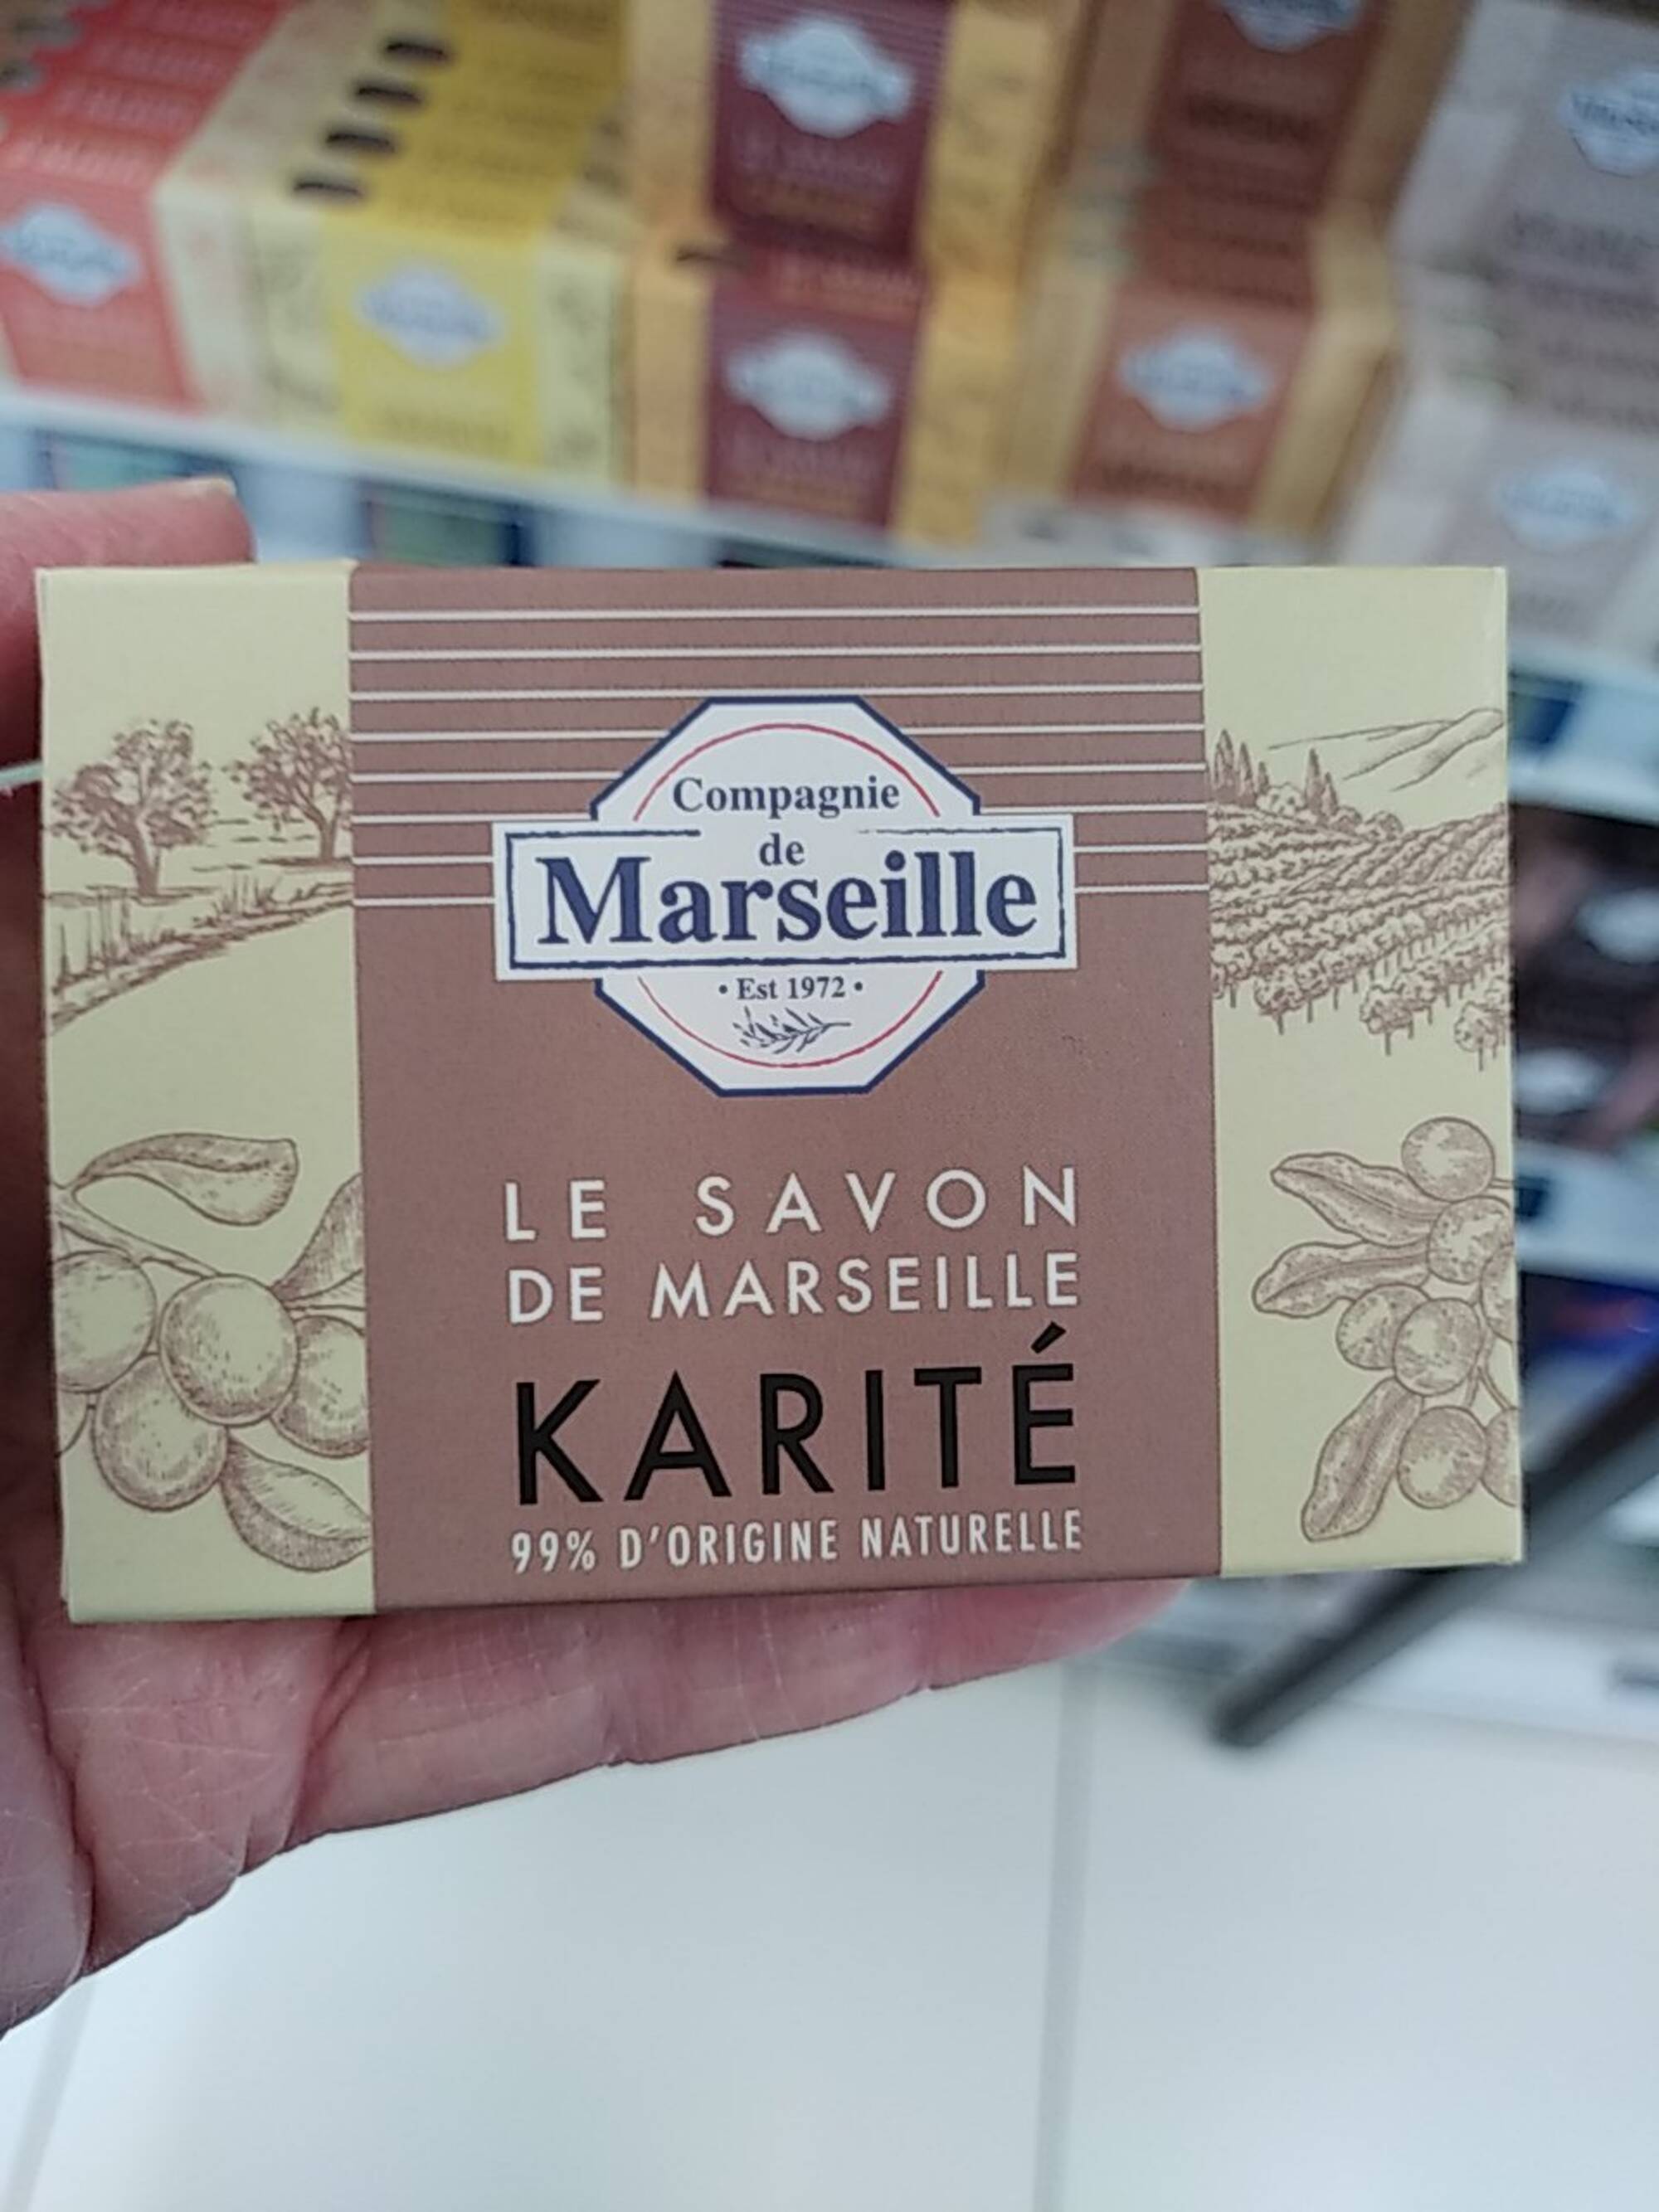 COMPAGNIE DE MARSEILLE - Le savon de Marseille karité 